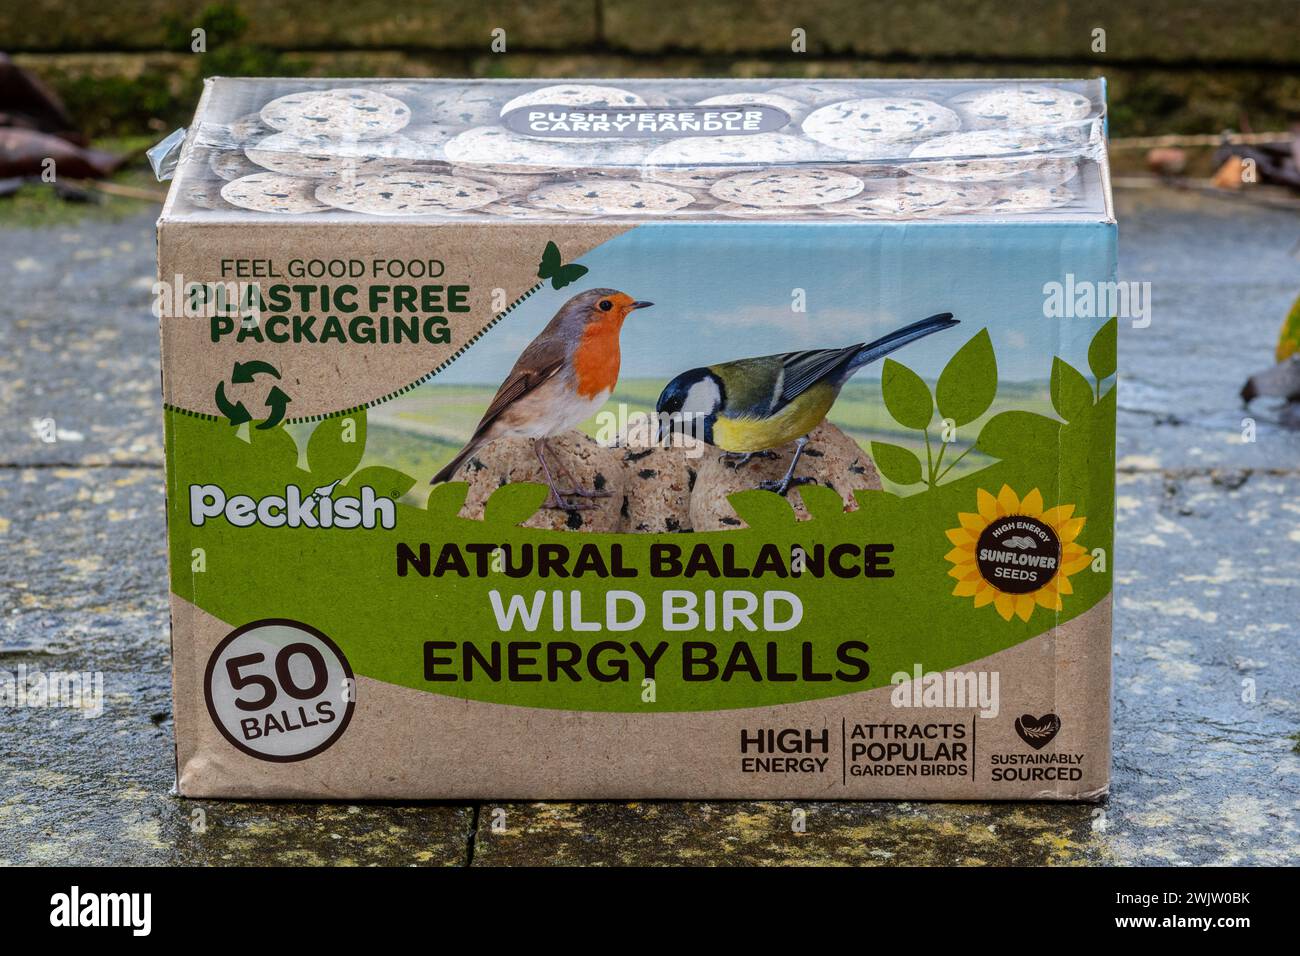 Nourriture pour oiseaux dans un emballage sans plastique, Royaume-Uni. Concept : réduction du remplacement des emballages en plastique Banque D'Images